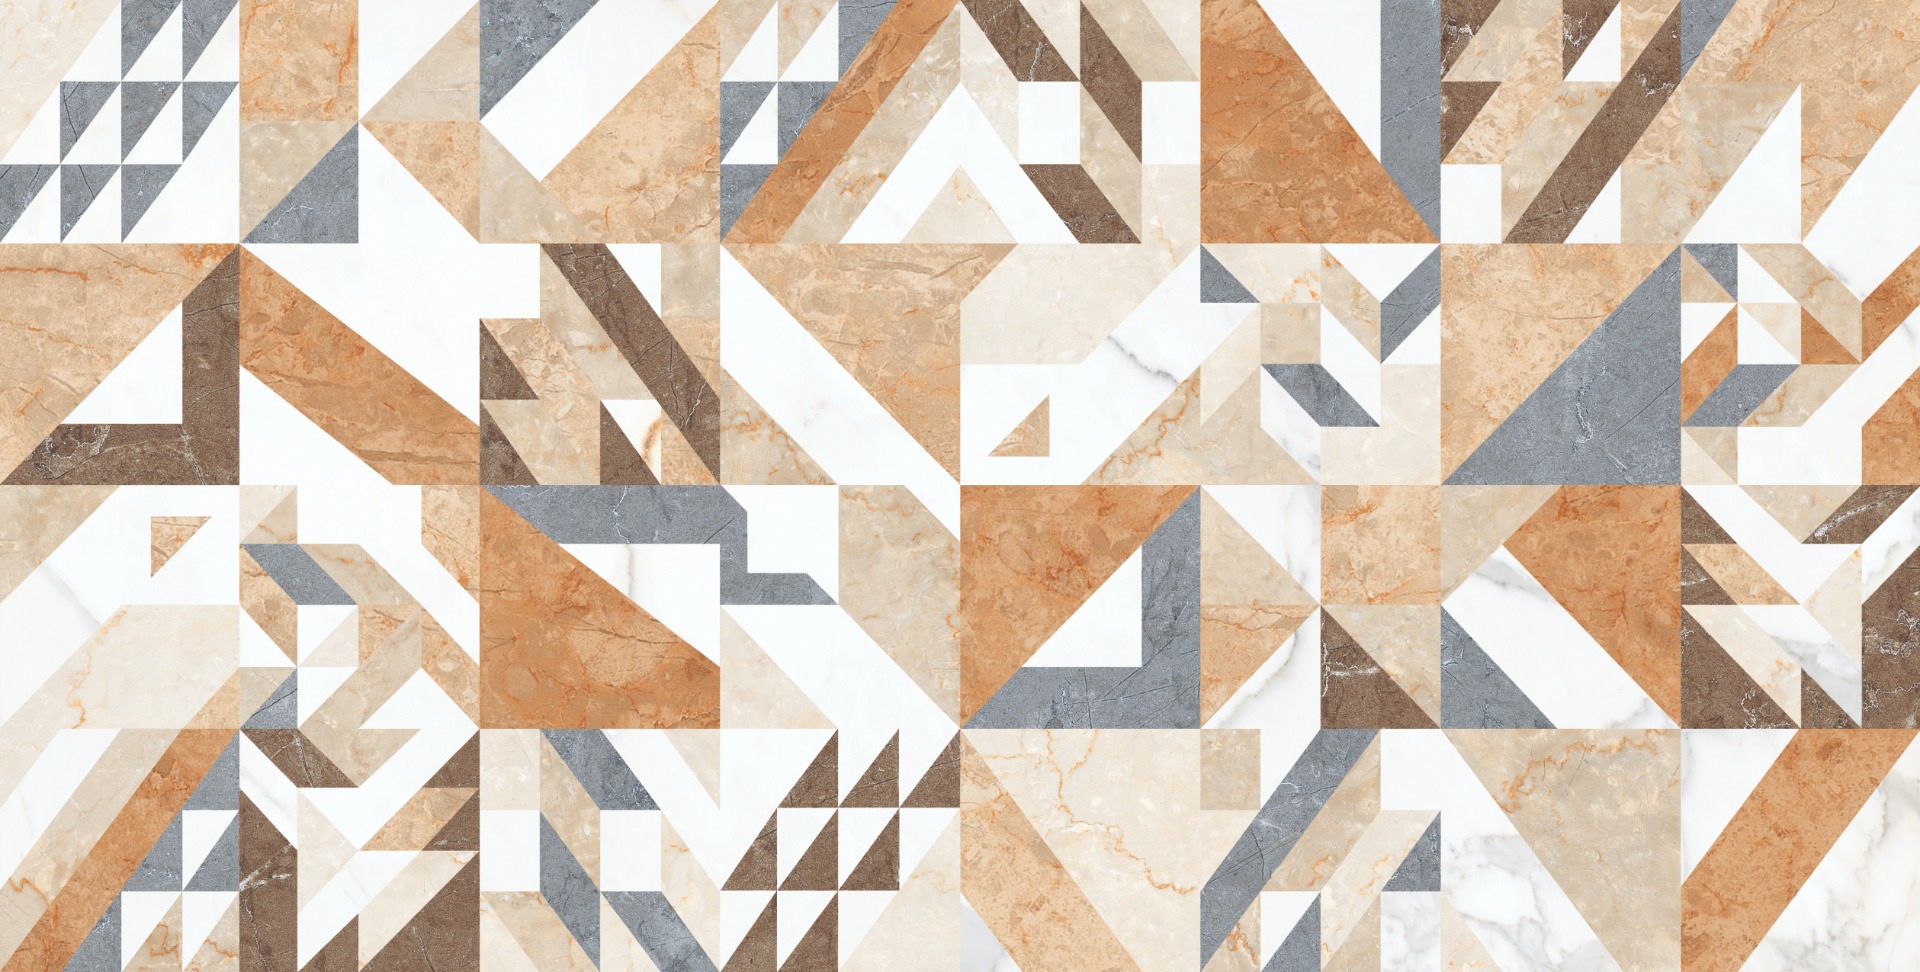 Geometric Tiles for Bathroom Tiles, Living Room Tiles, Kitchen Tiles, Bedroom Tiles, Accent Tiles, Automotive Tiles, Bar/Restaurant, Commercial/Office